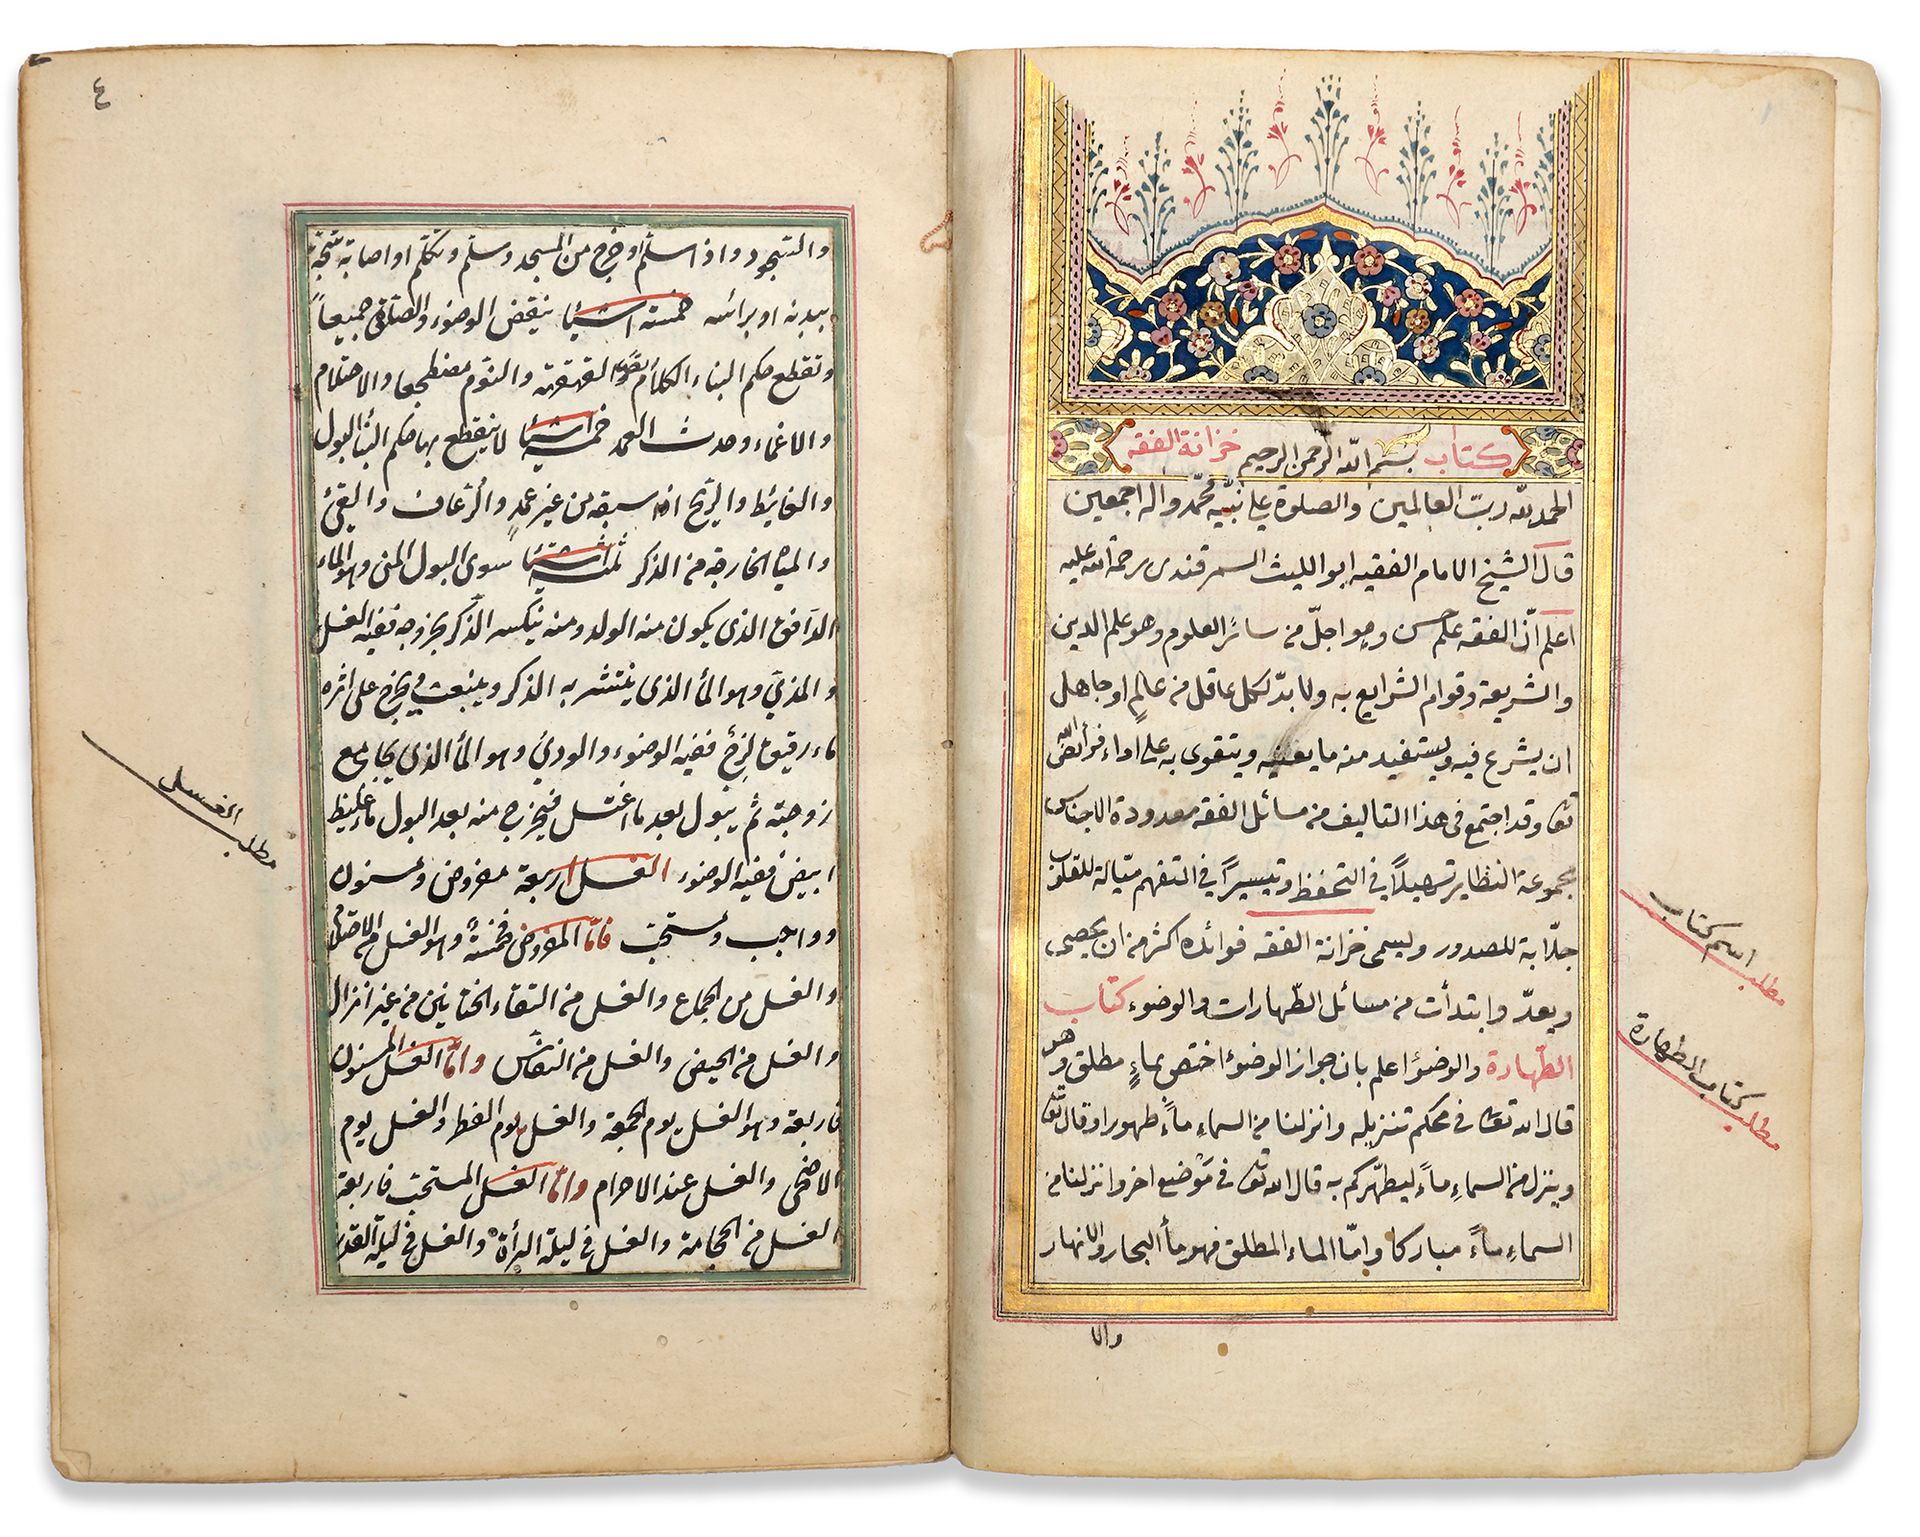 KHIZANAT AL-FIQH BY NASR IBN MUHAMMAD ABU AL-LAYTH AL-SAMARQANDI COPIED 1076 AH/&hellip;